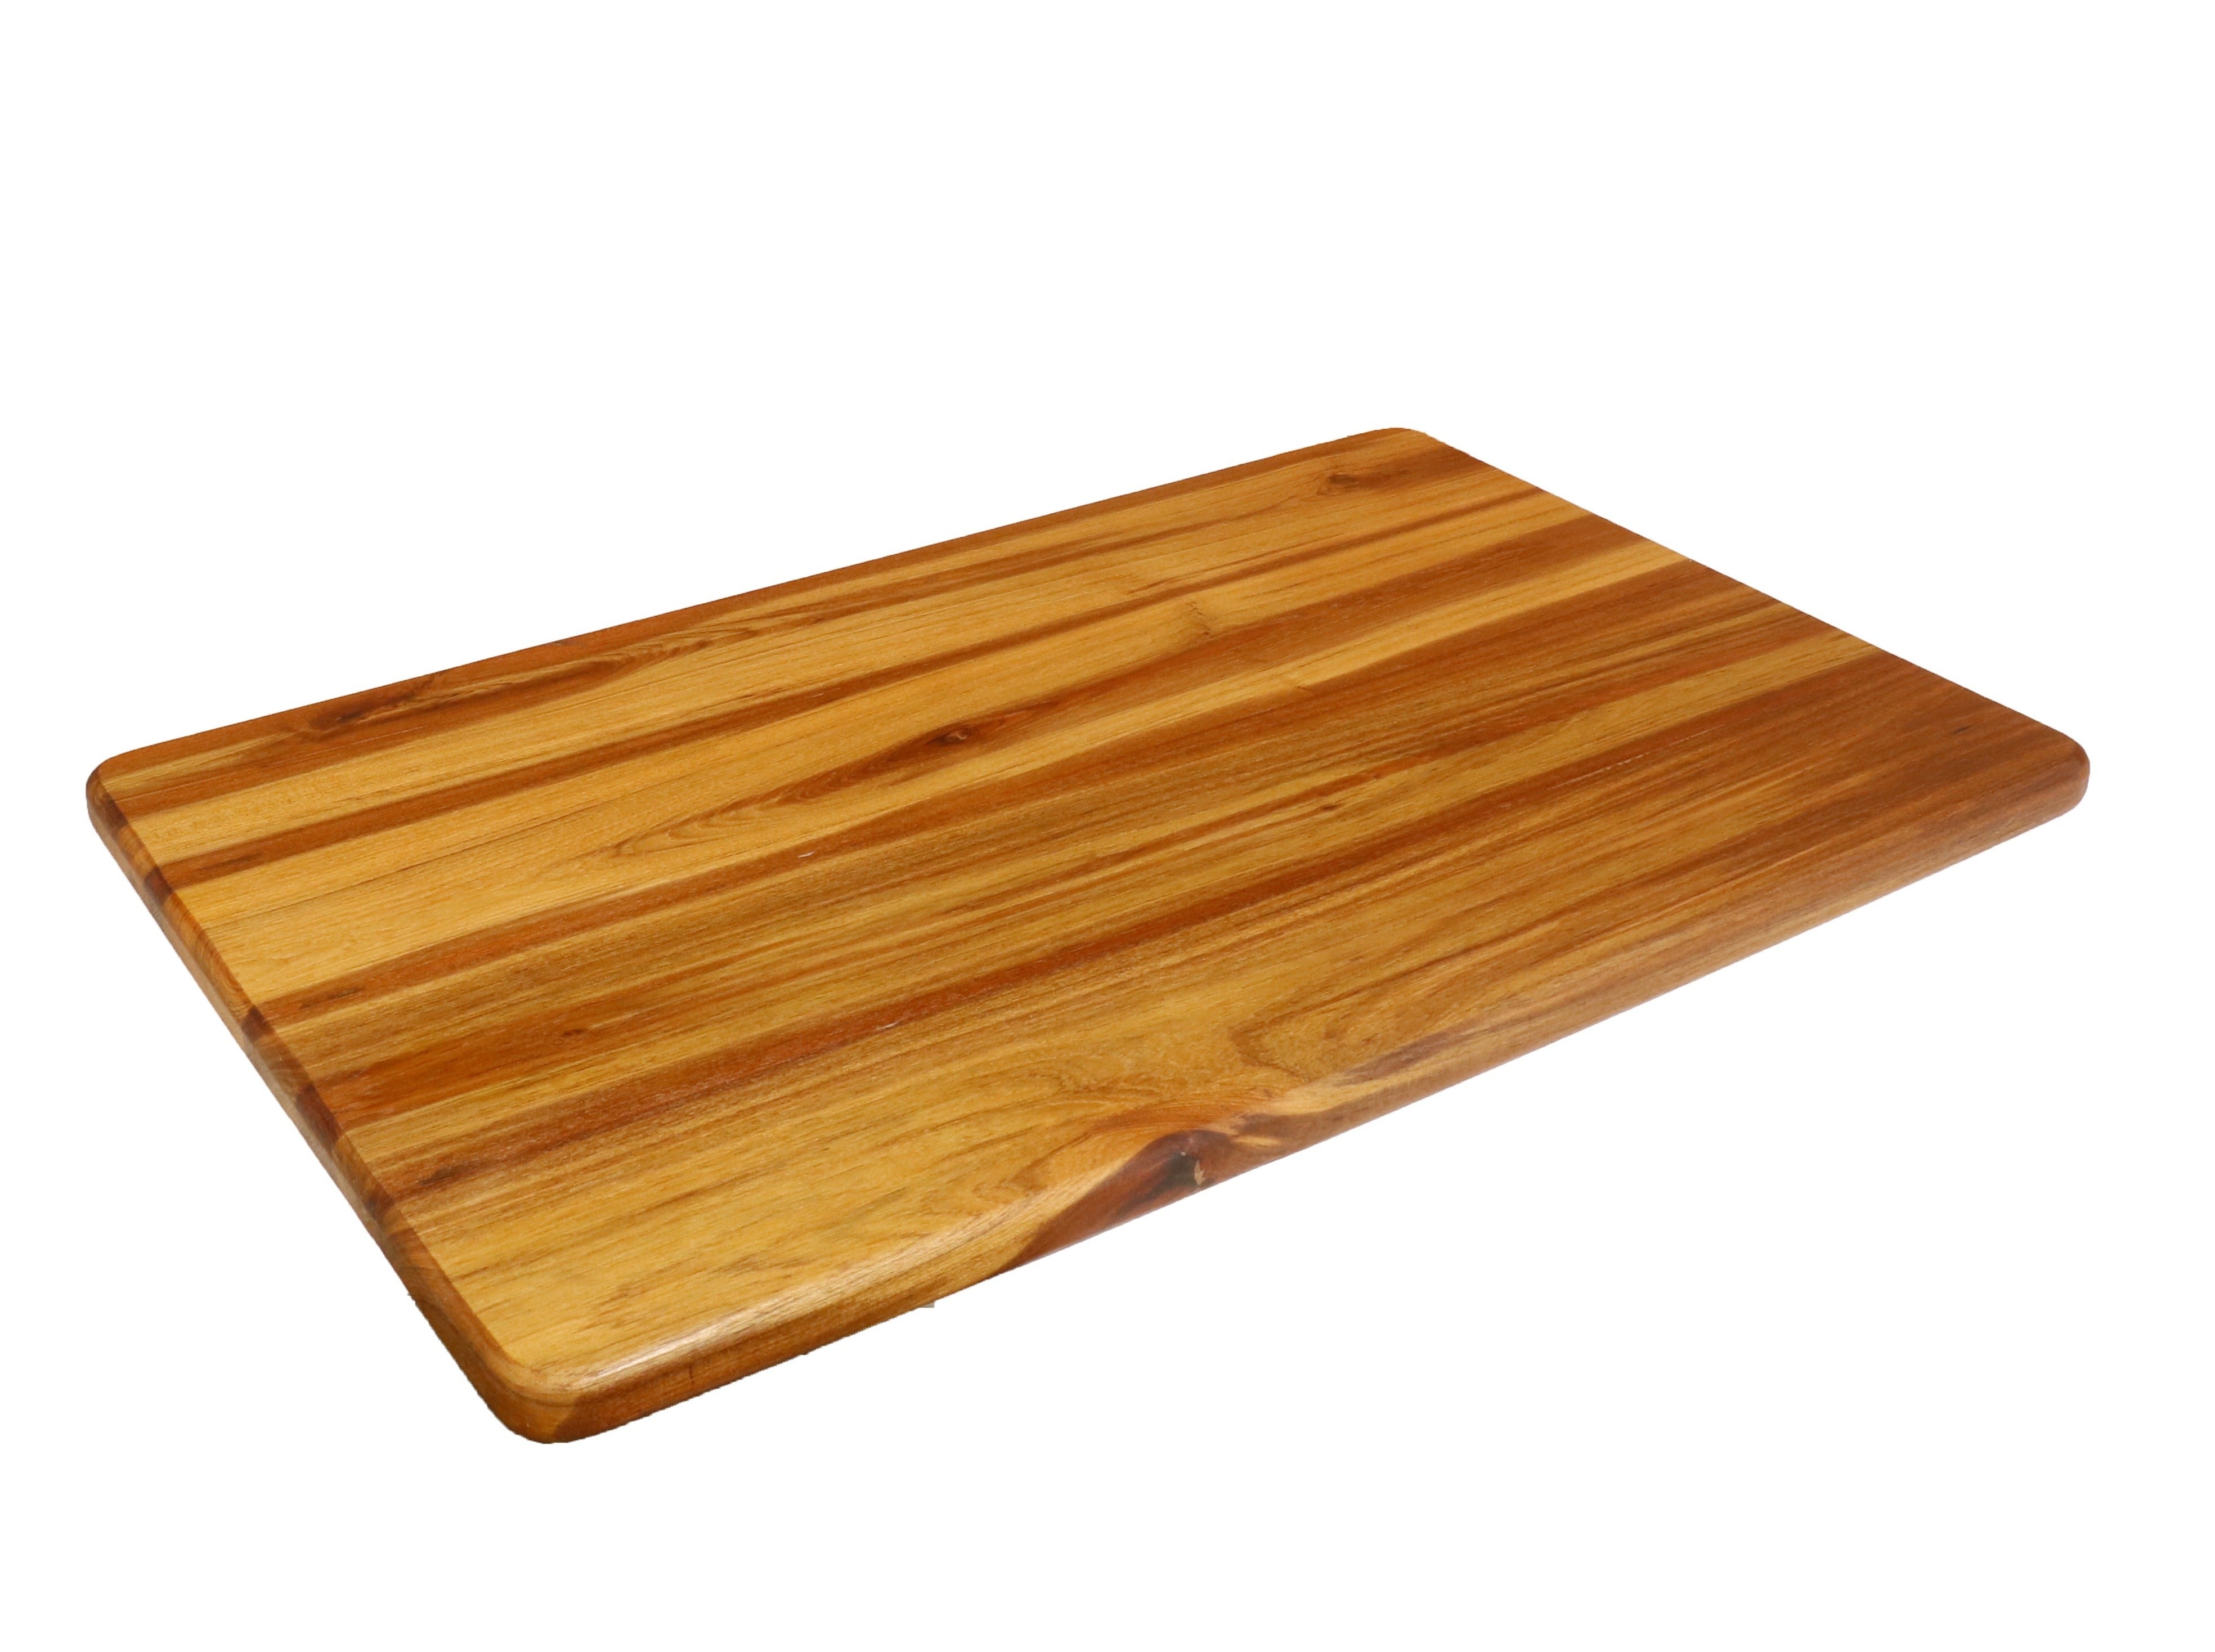 Elegant Teak Wood Chopping Board Cutting Board